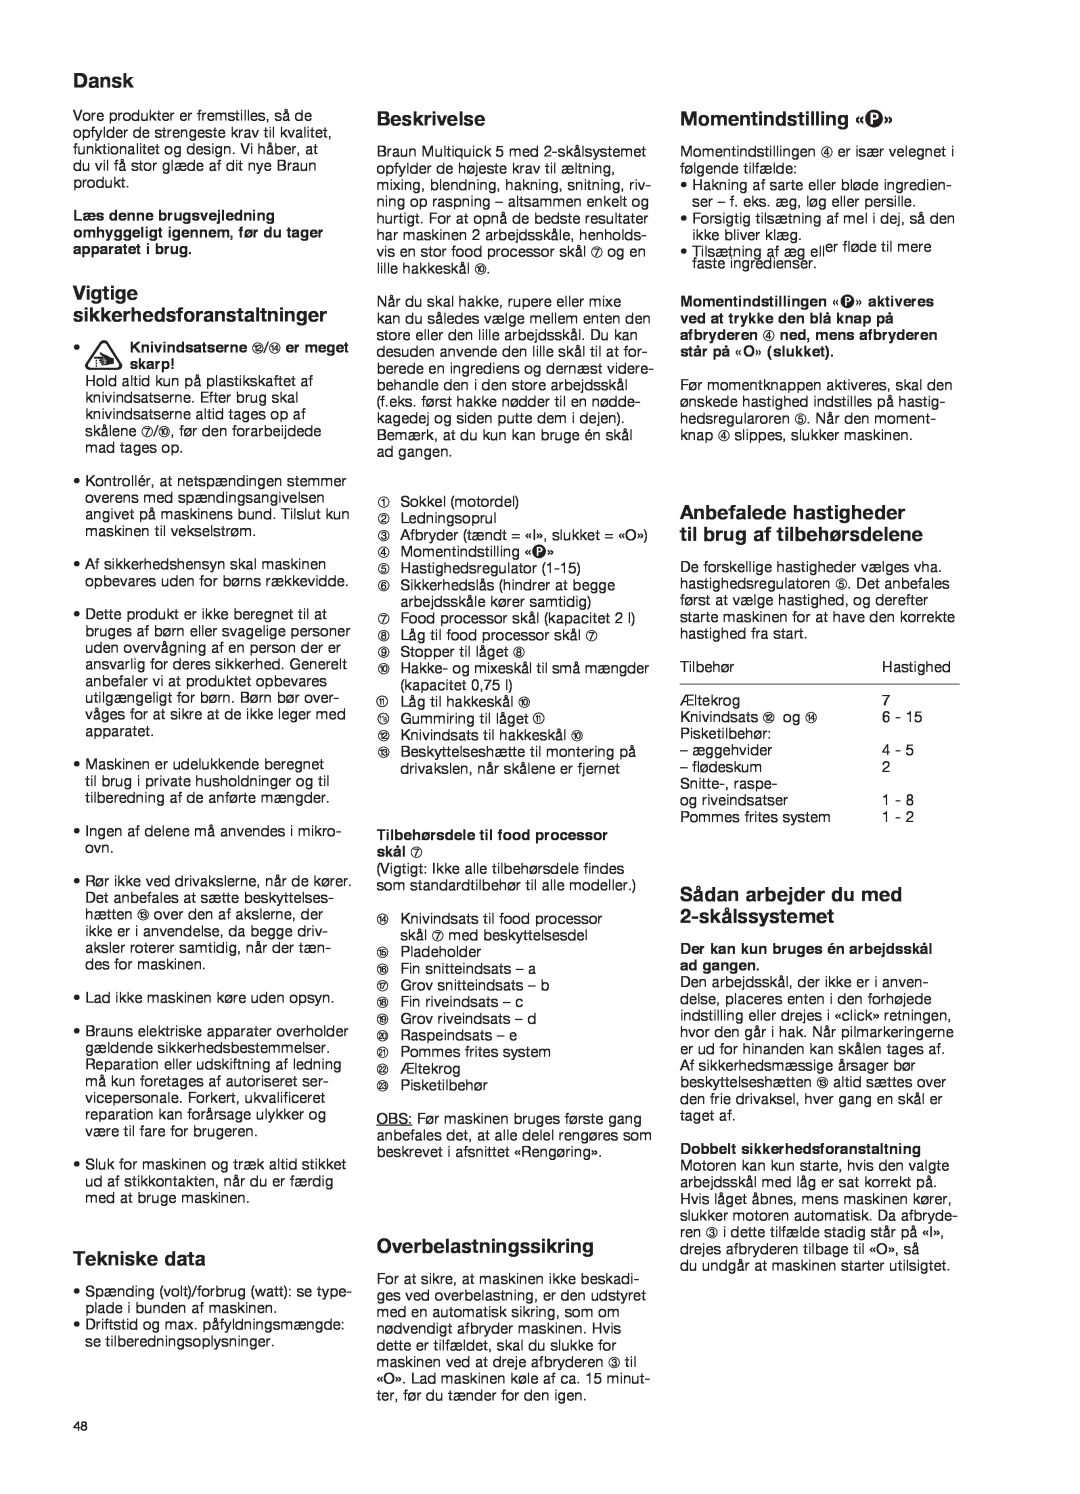 Braun K 700 black manual Dansk, Vigtige sikkerhedsforanstaltninger, Beskrivelse, Momentindstilling «P», Tekniske data 